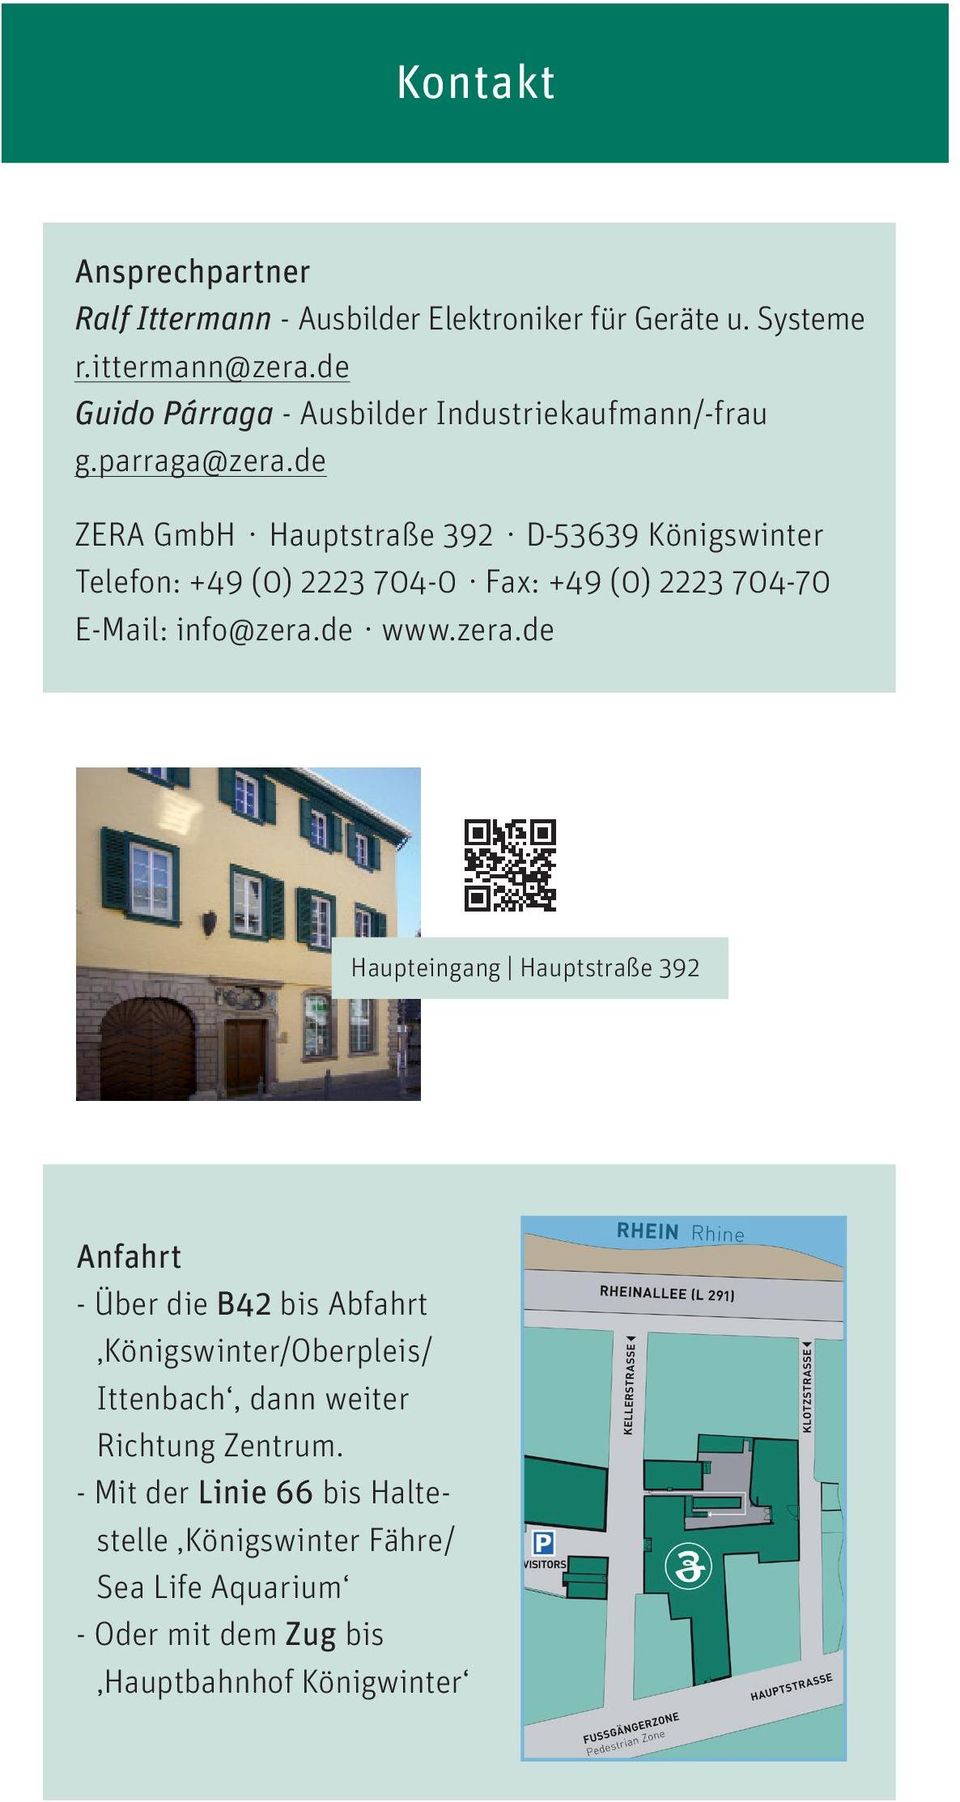 de ZERA GmbH Hauptstraße 392 D-53639 Königswinter Telefon: +49 (0) 2223 704-0 Fax: +49 (0) 2223 704-70 E-Mail: info@zera.